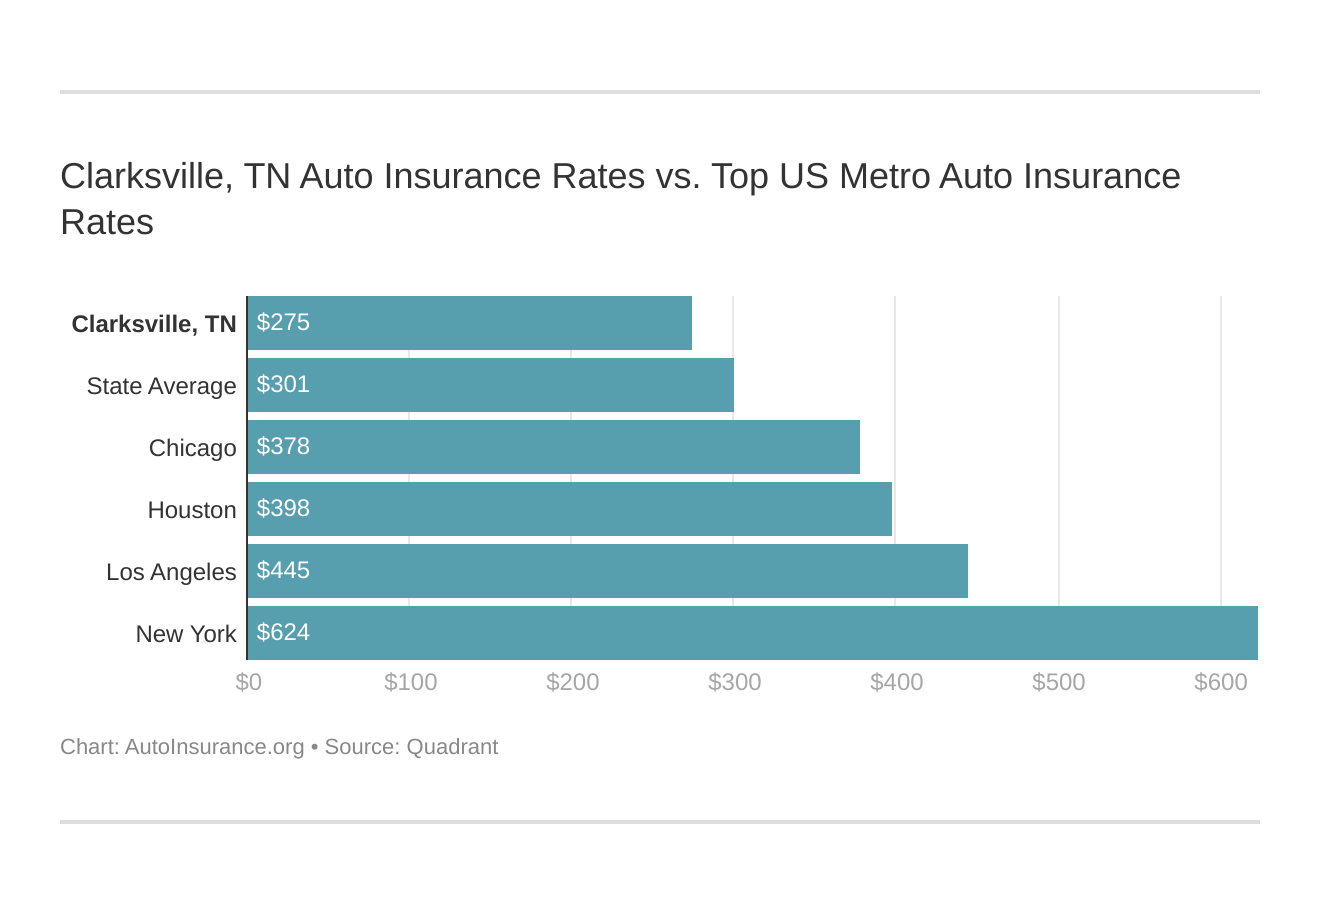 Clarksville, TN Auto Insurance Rates vs. Top US Metro Auto Insurance Rates